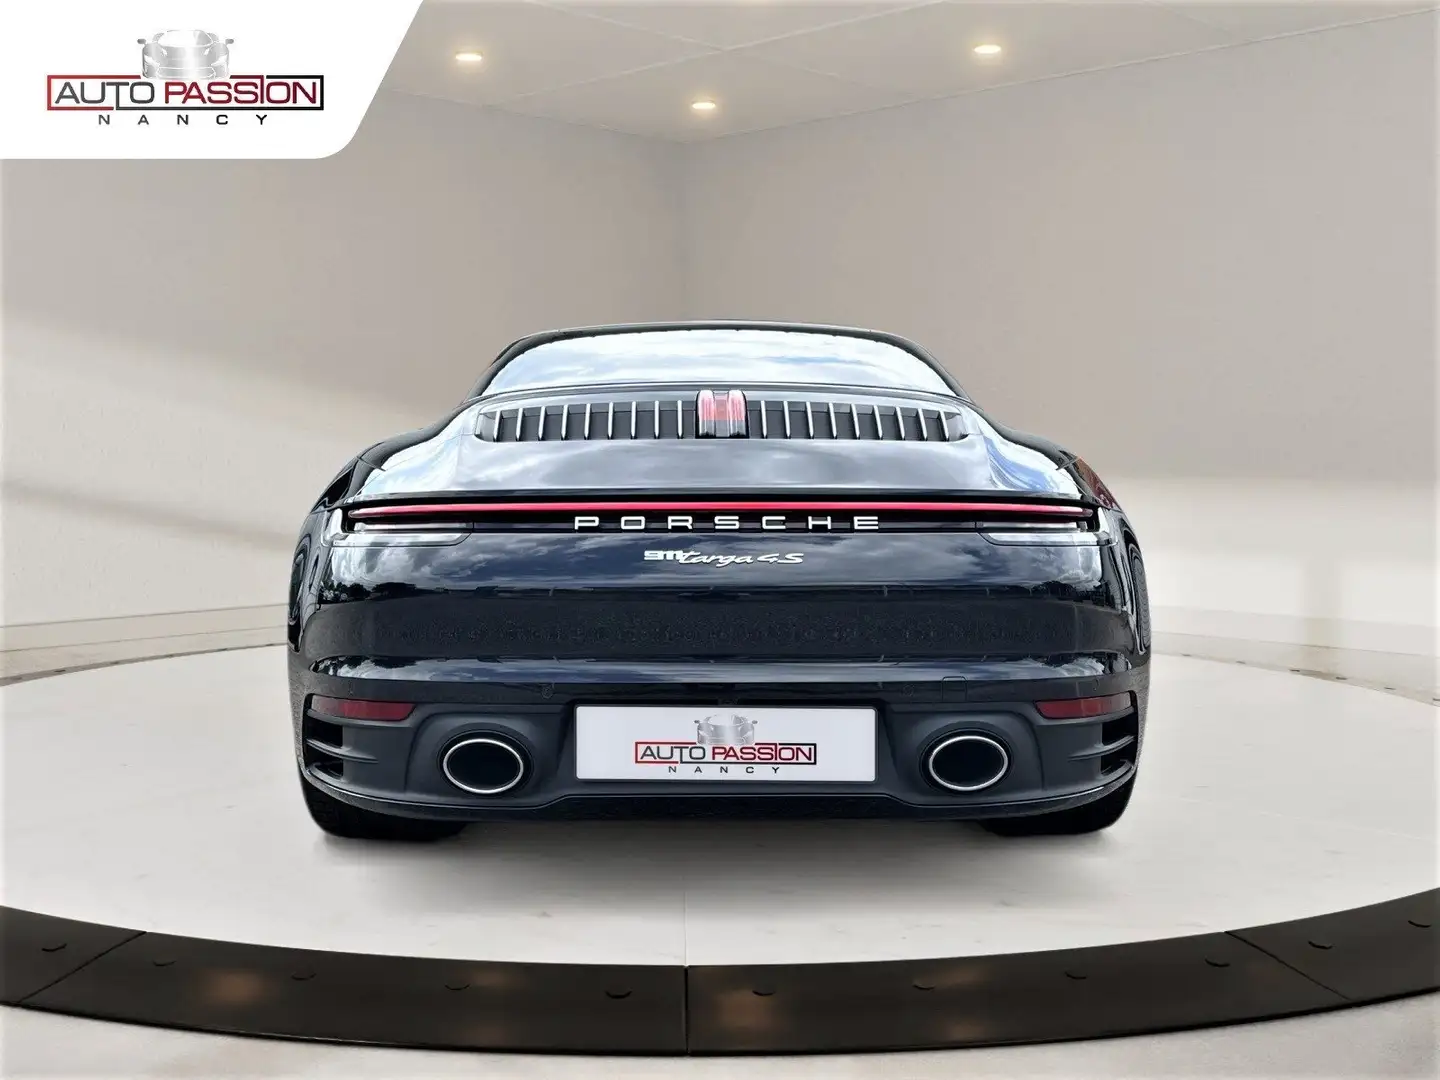 Porsche Targa